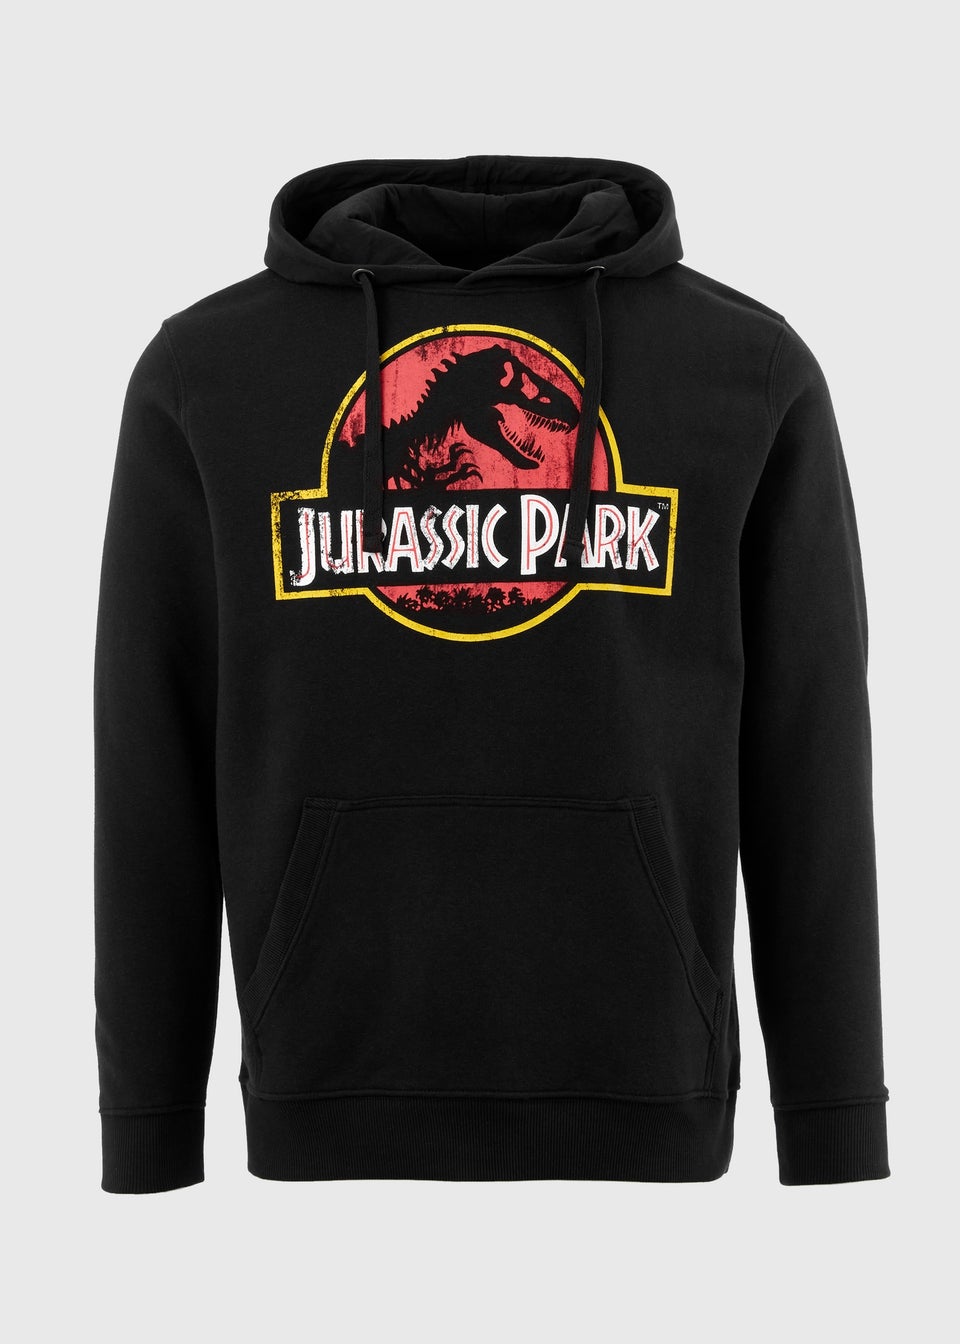 Jurassic Park Black Hoodie